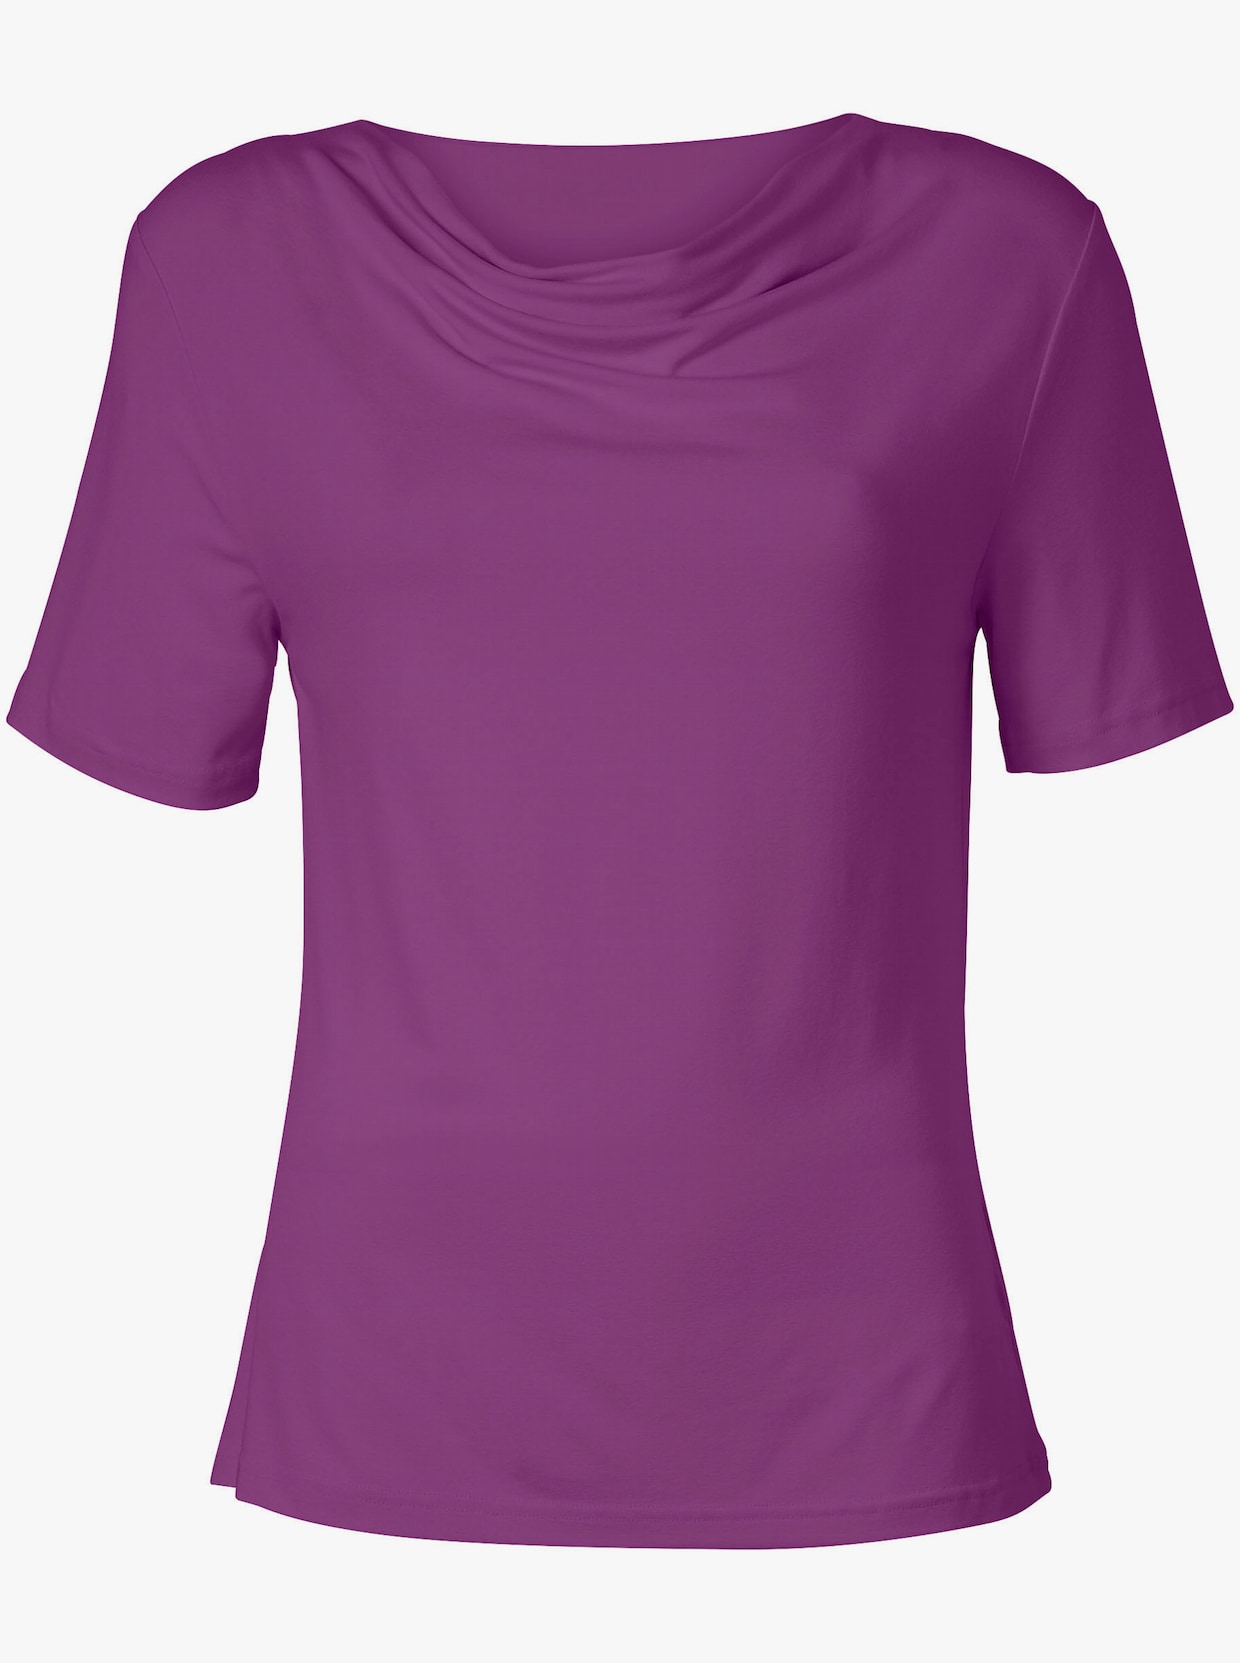 Tričko s vodopádovým golierom - fialová